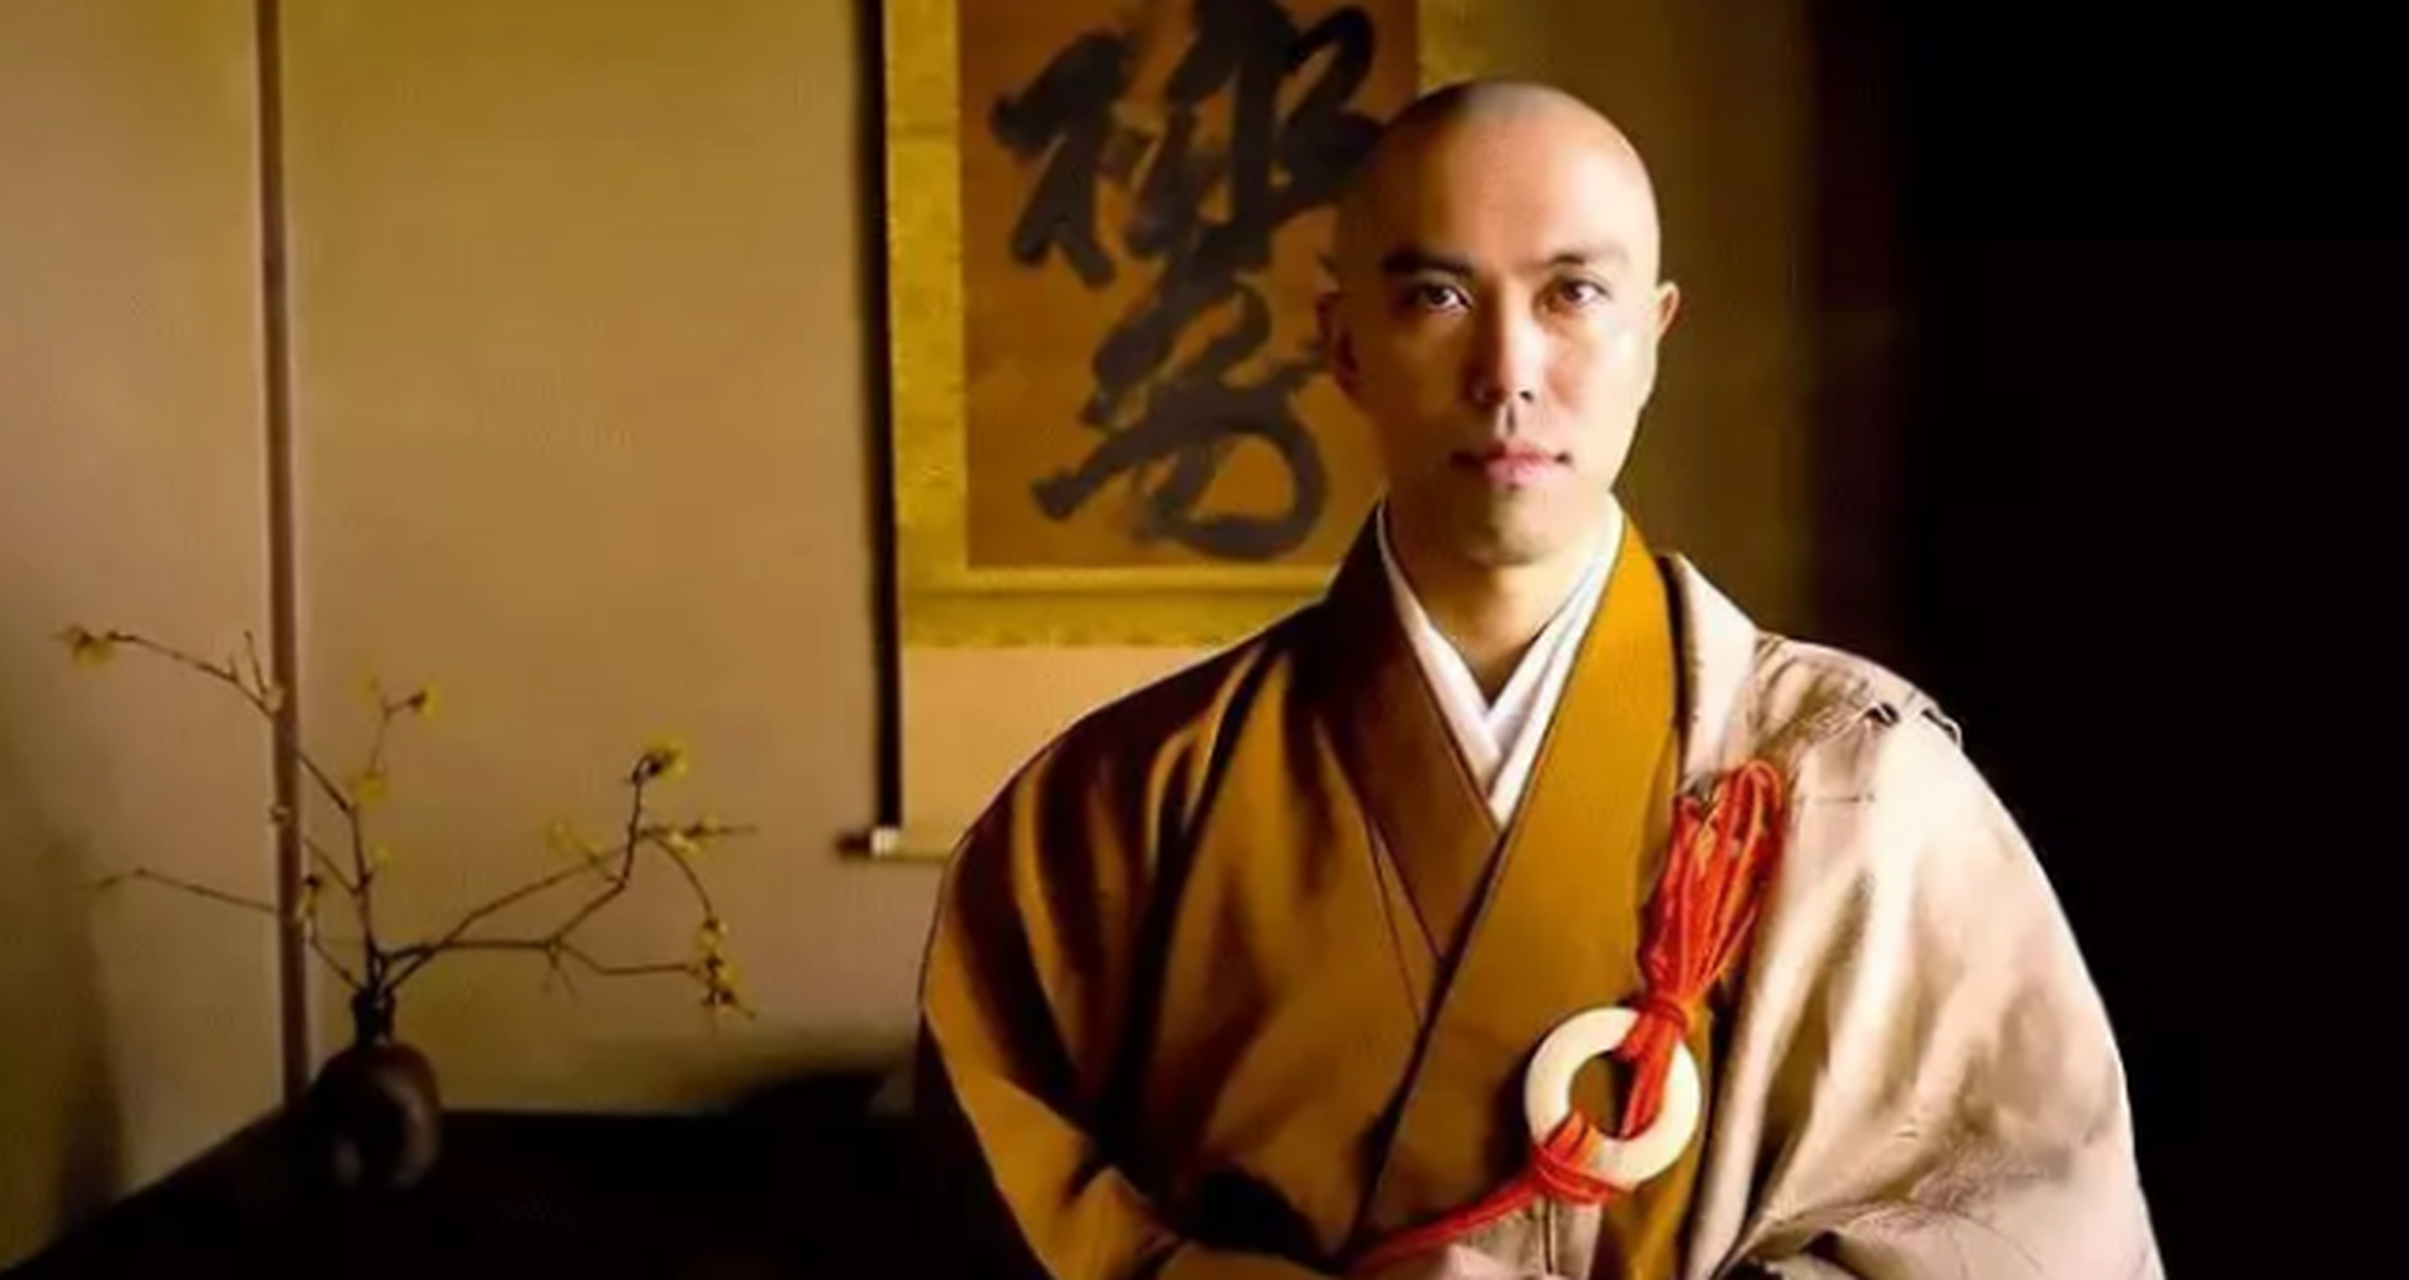 日本著名僧人图片